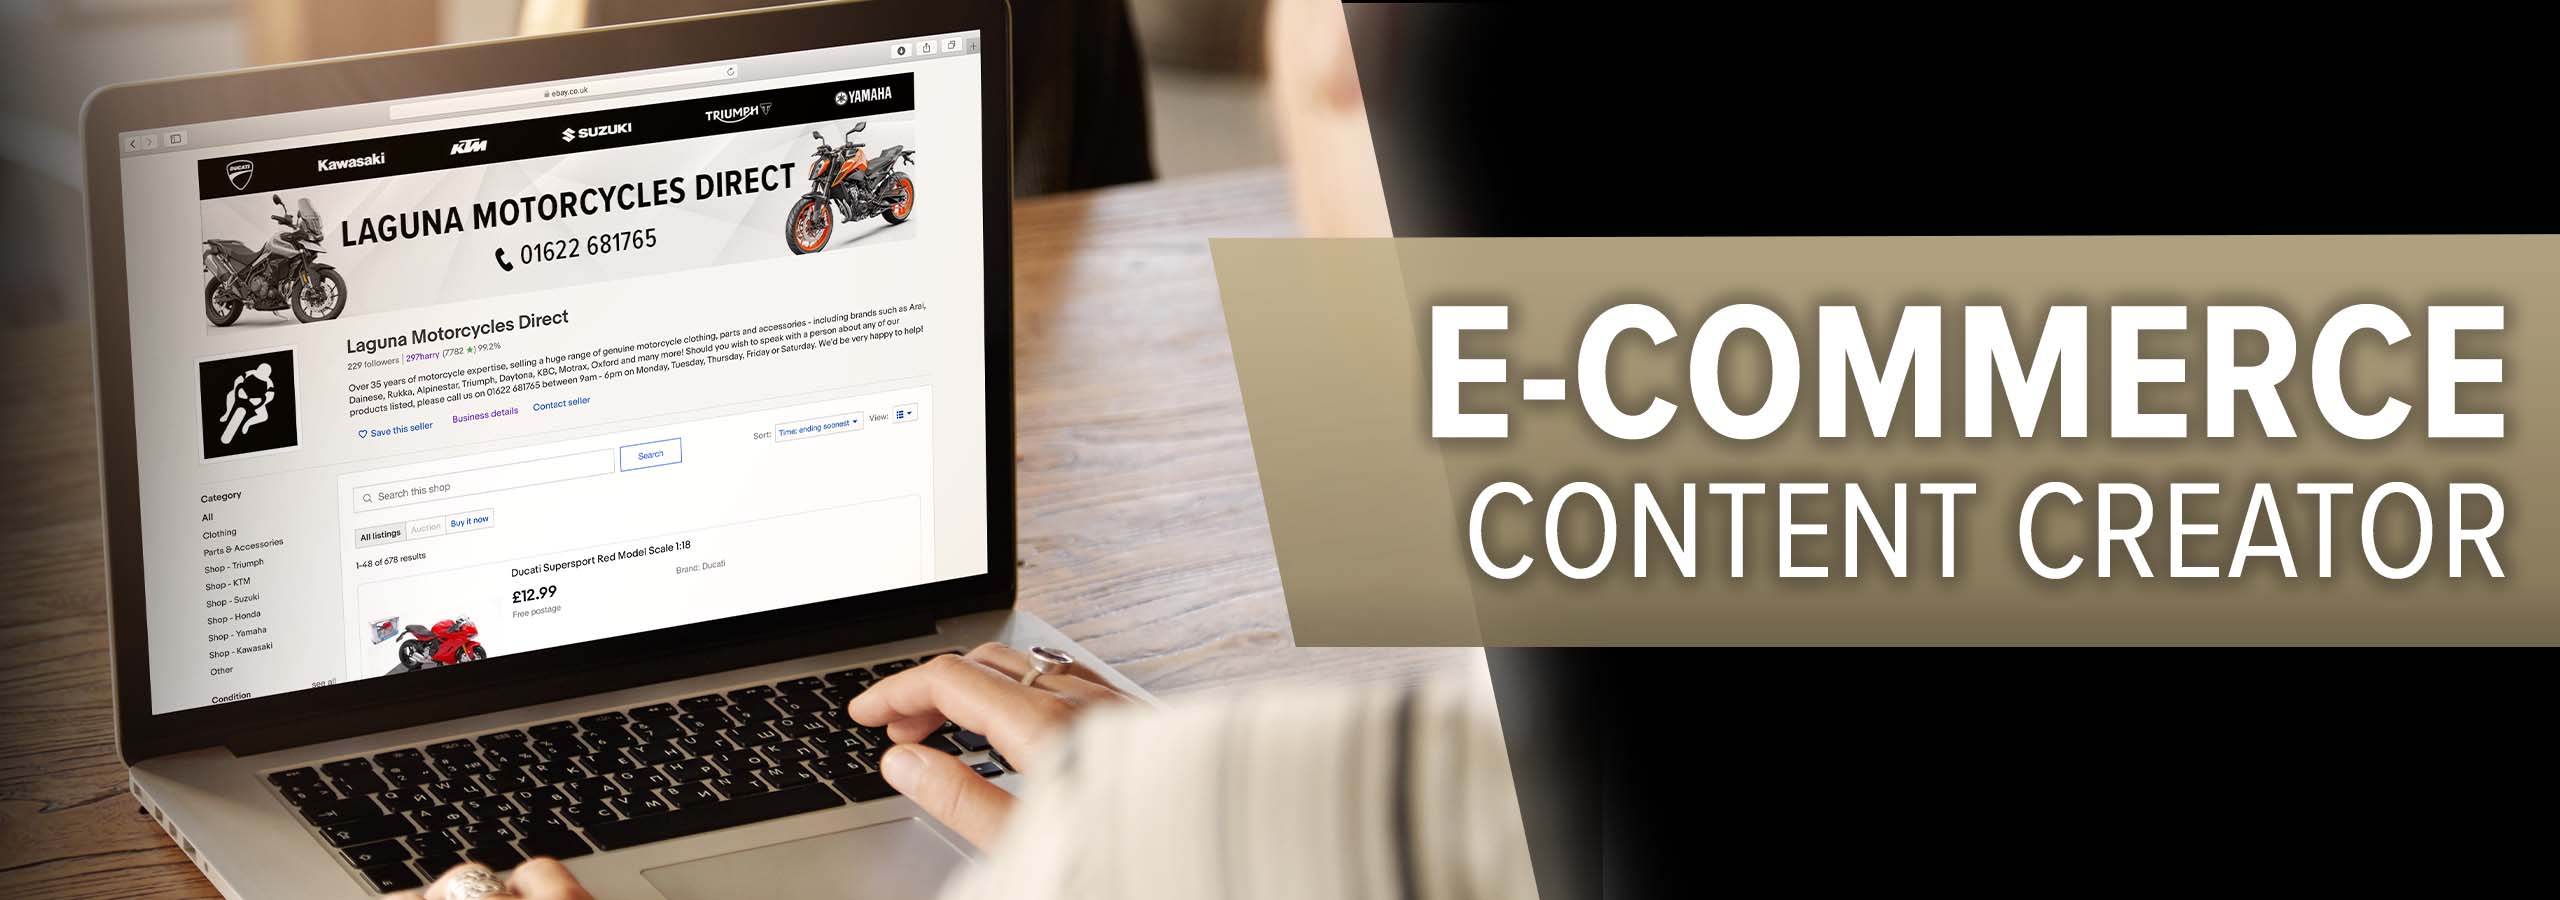 Laguna Motorcycles e-Commerce Content Creator job vacancy